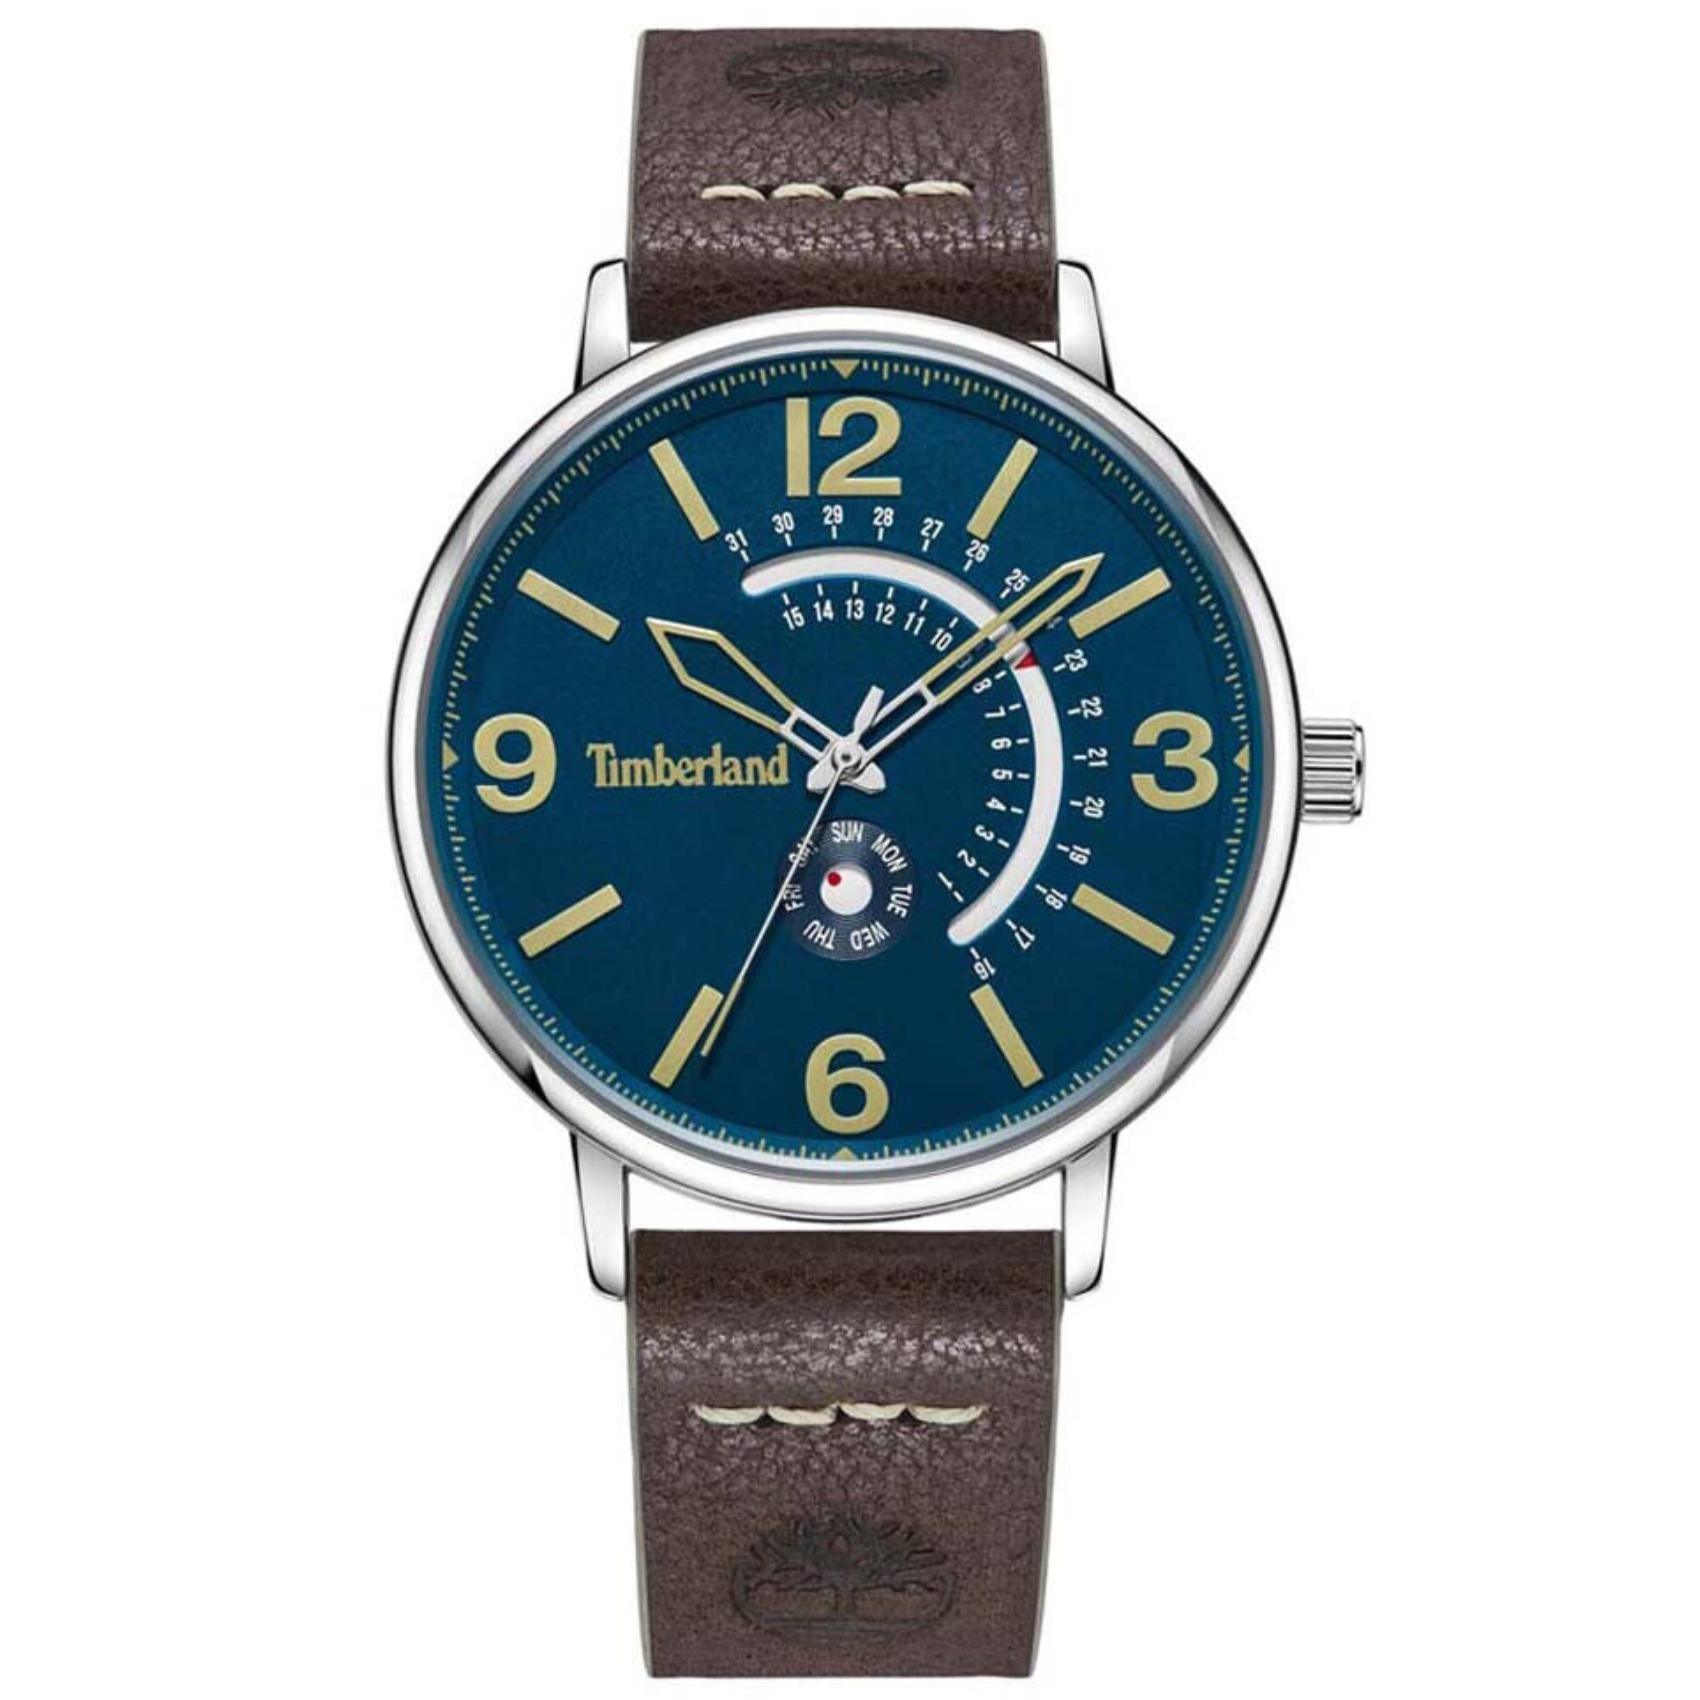 Αντρικό ρολόι χρονογράφος Timberland Saunderstown Tdwgb2182701 με καφέ δερμάτινο λουράκι και μπλε καντράν διαμέτρου 43mm.